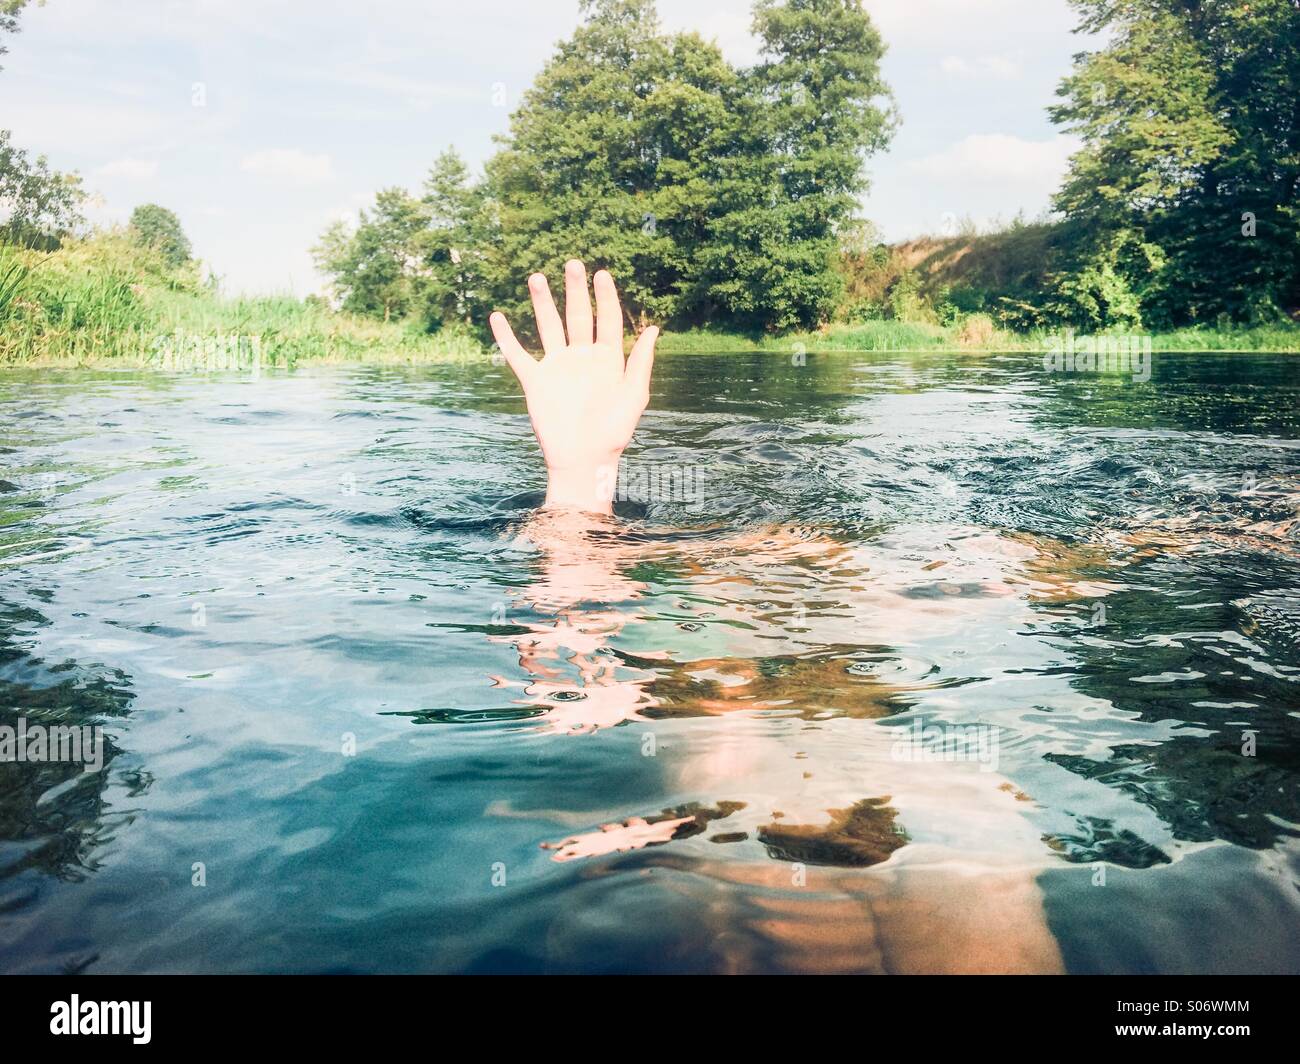 Garçon immergé dans un fleuve en gardant sa main au-dessus de l'eau Banque D'Images